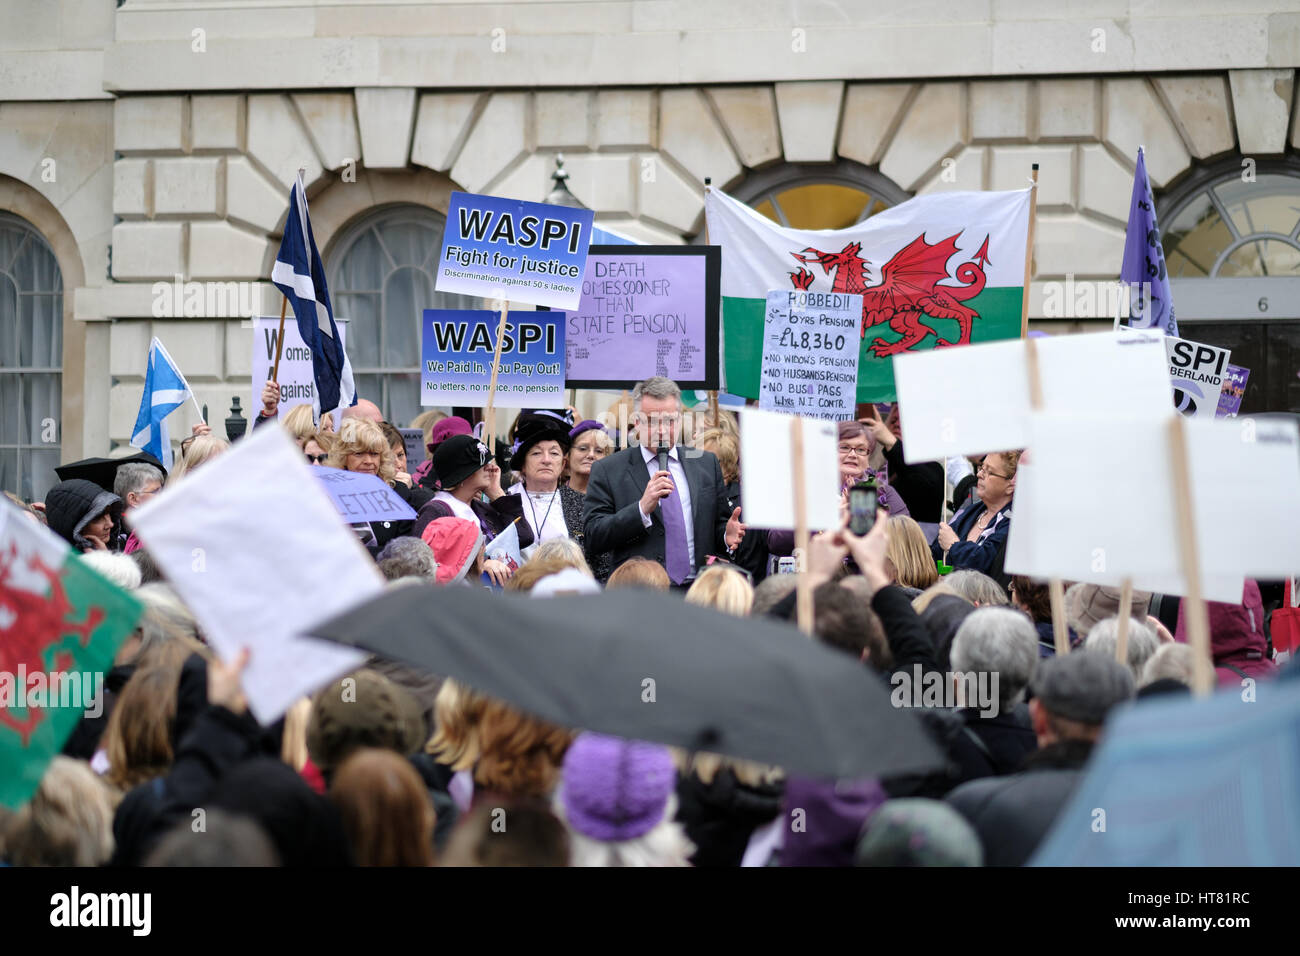 Londra, Regno Unito. 8 Mar, 2017. Donne contro la pensione statale protesta di disuguaglianza, la Casa del Parlamento, Londra, UK Credit: Laurence Praxe Alamy/Live News Foto Stock